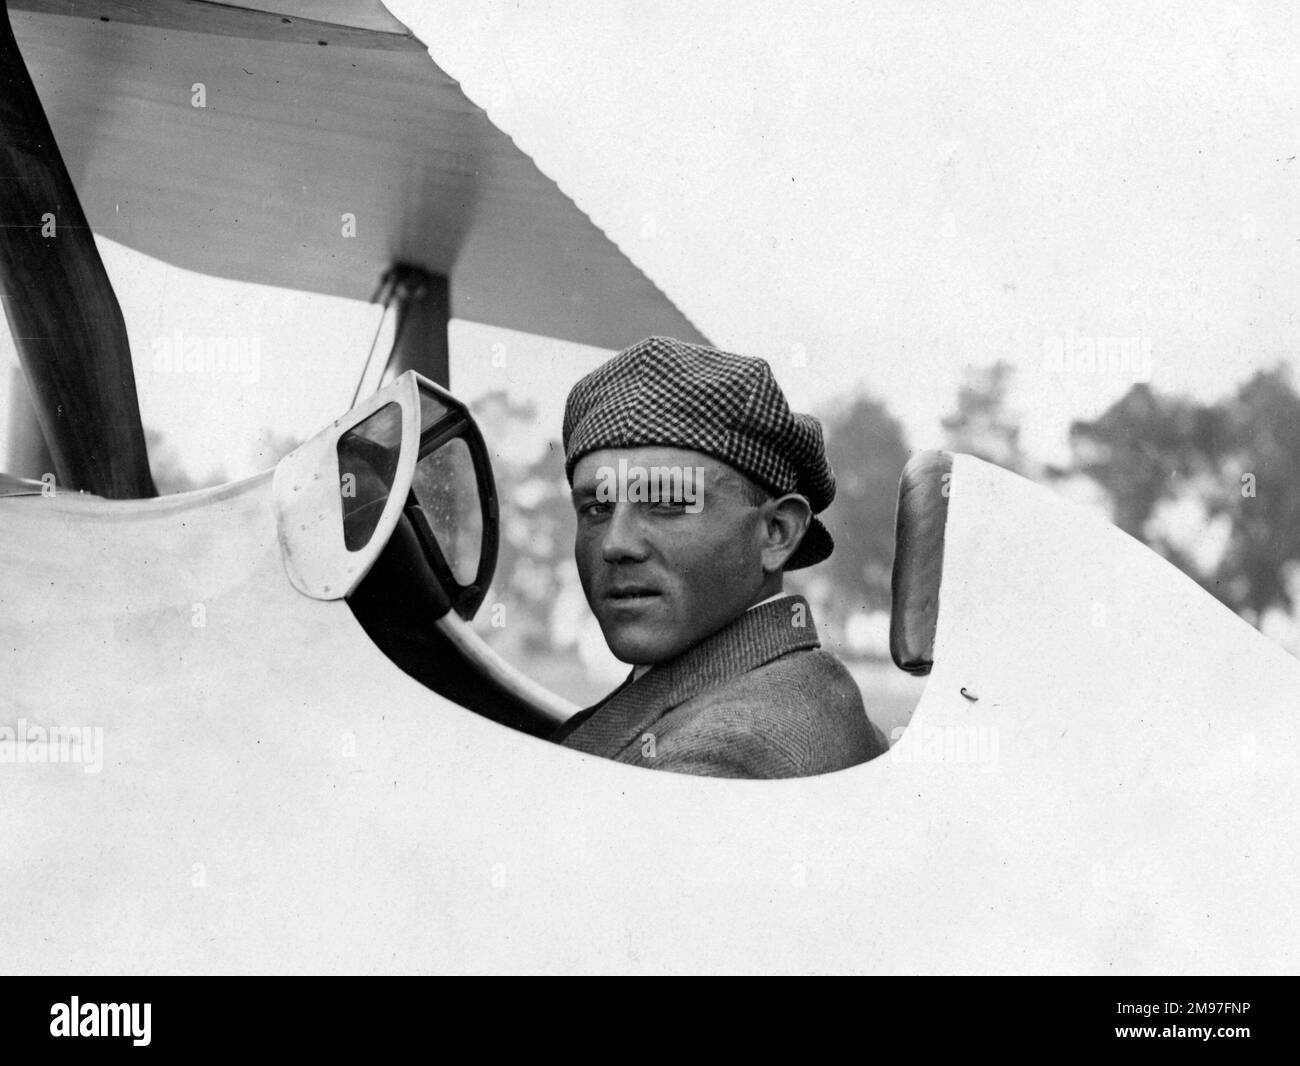 Kirsch, pilota di Georges Fighter e 'Balloon Buster' a Nieuport Delage 29 '20 Gordon Bennett. Foto Stock